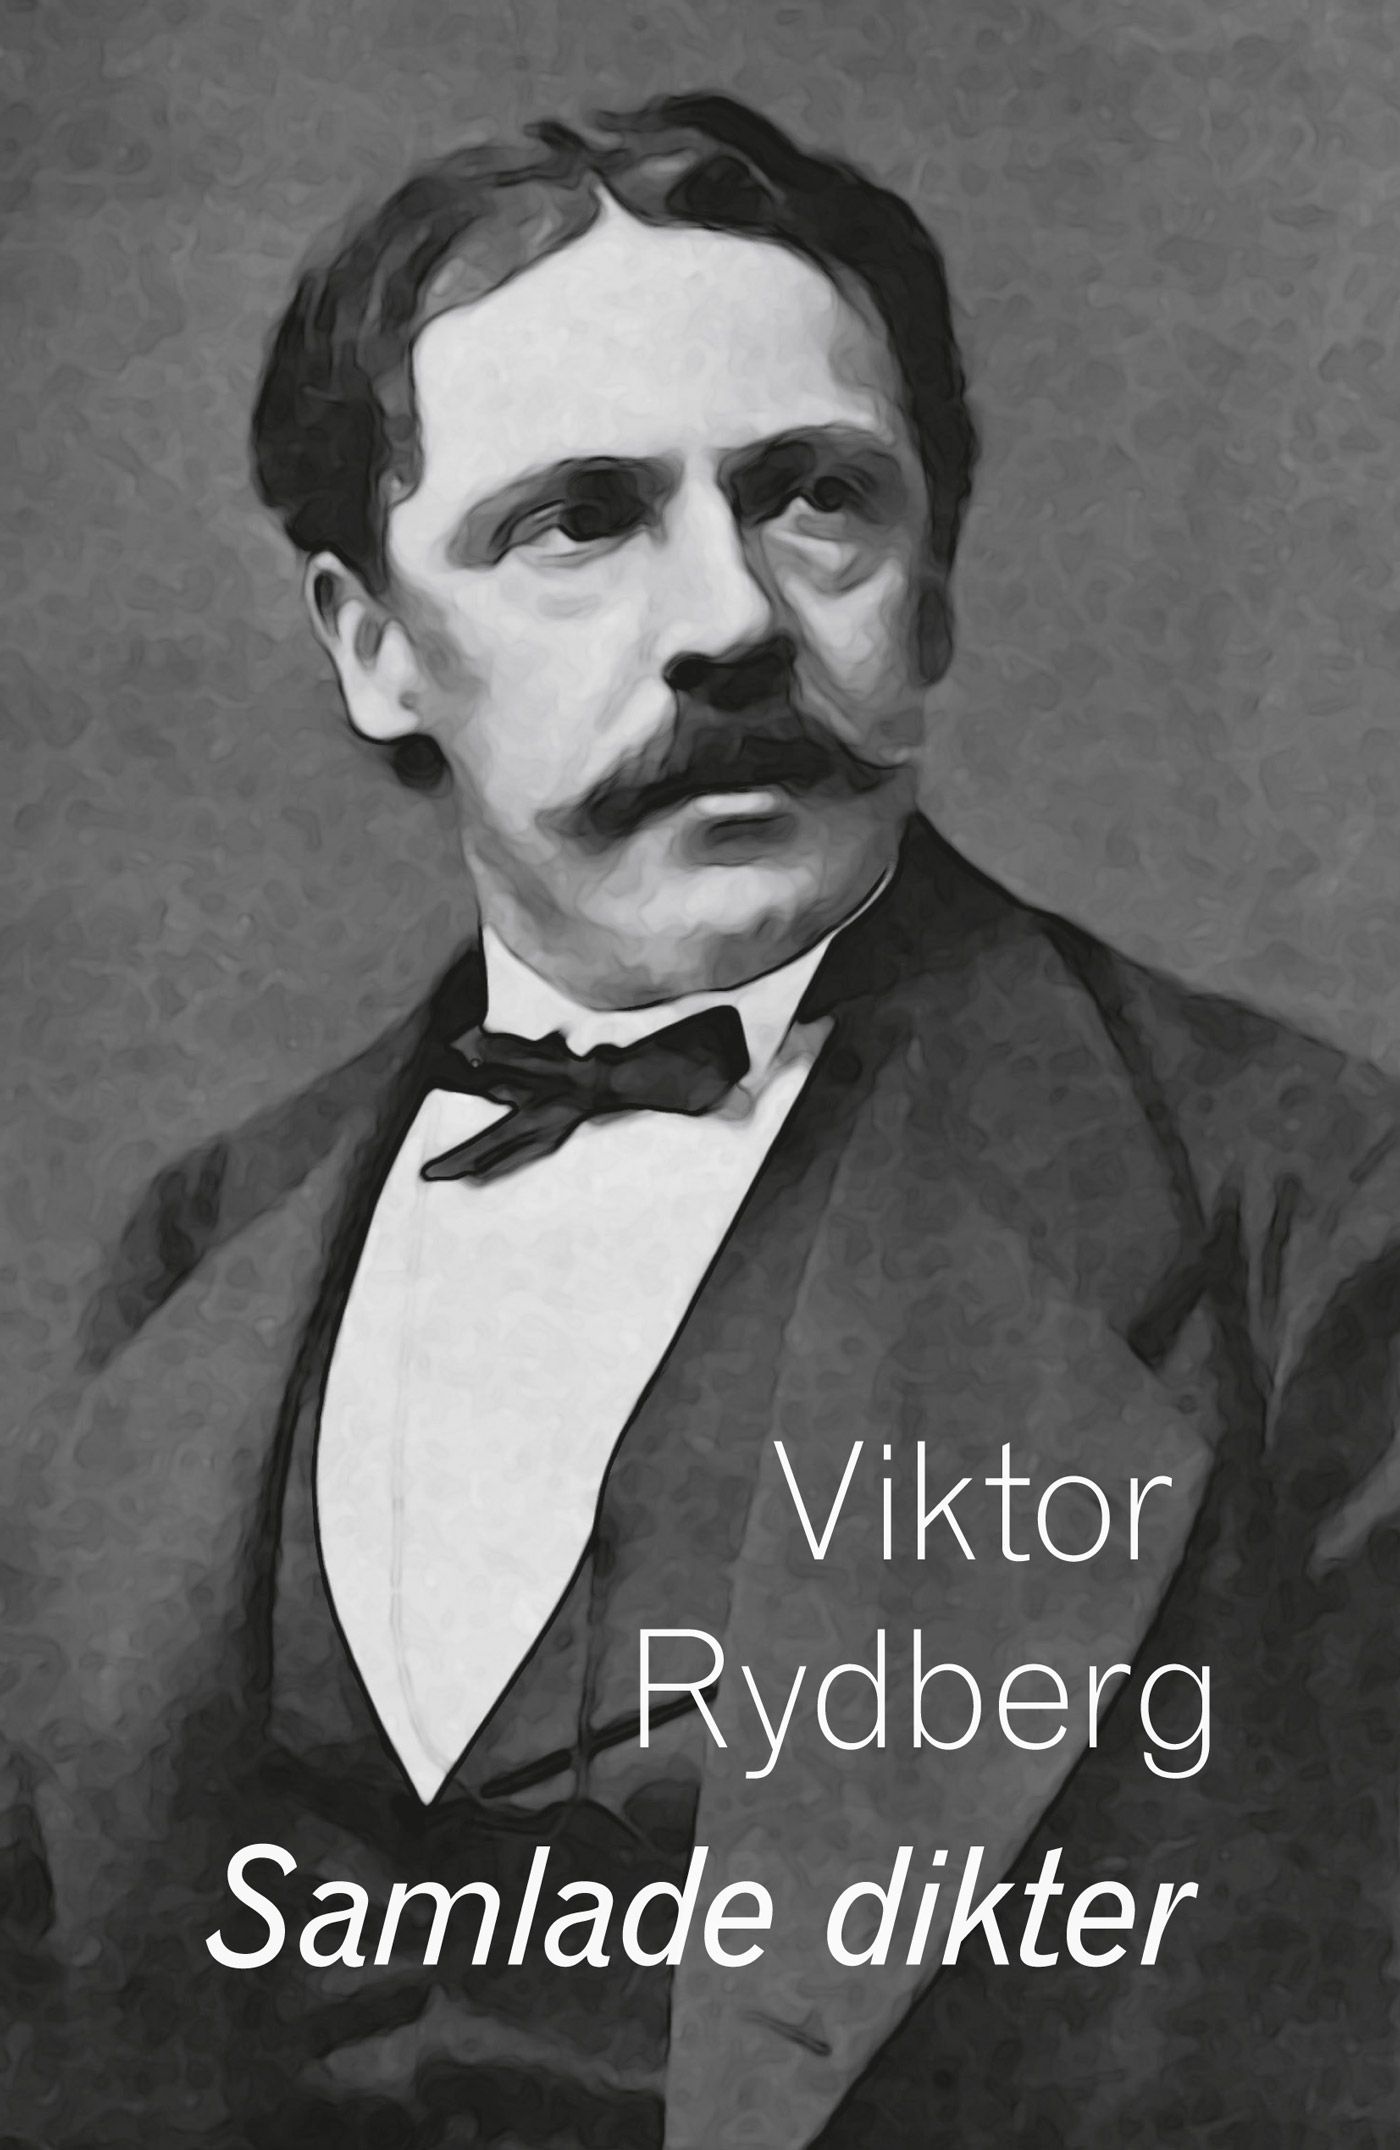 Samlade dikter, e-bok av Viktor Rydberg